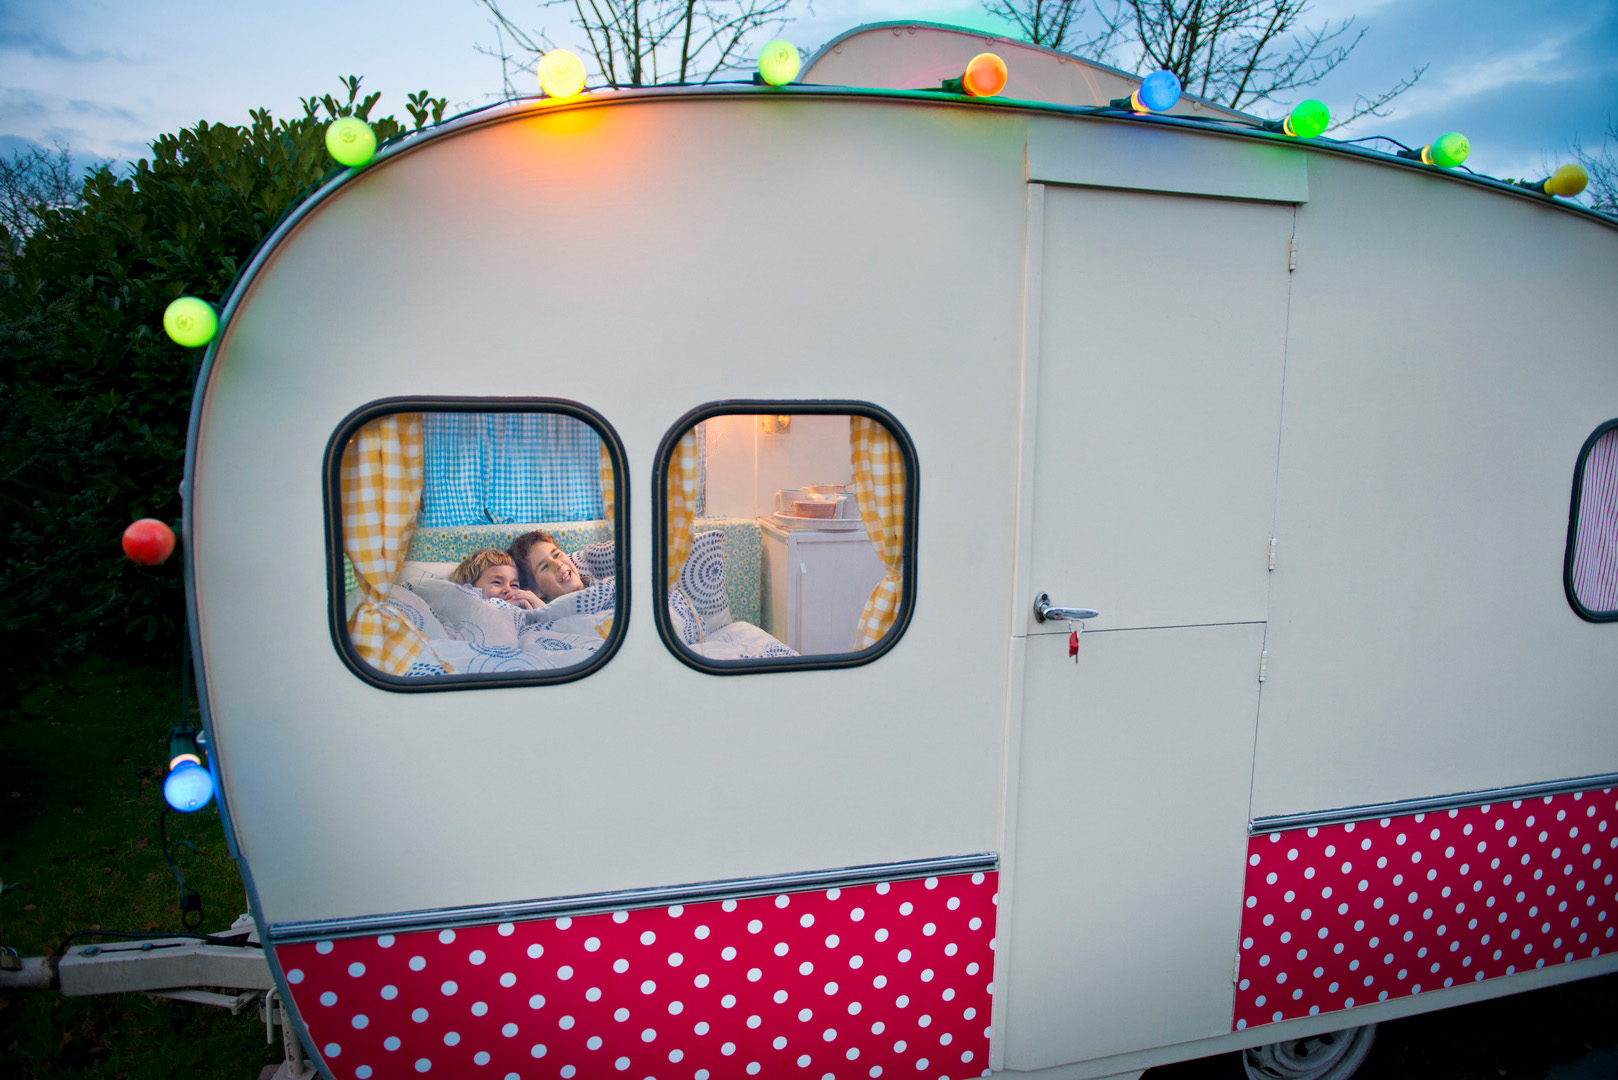 Wohnwagen, durch dessen Fenster zwei Kinder zu erkennen sind, die im Bett liegen